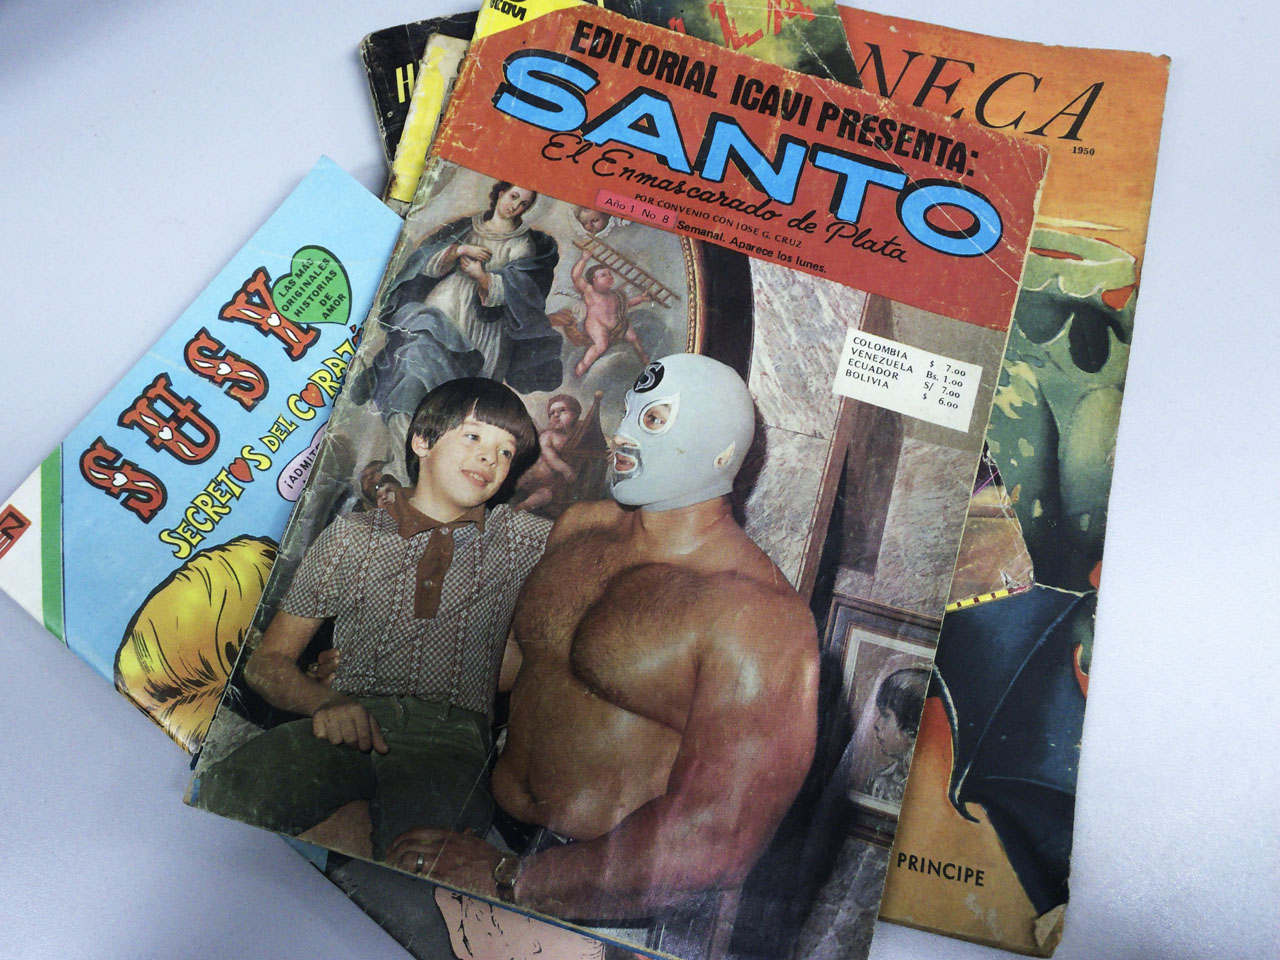 "Santo, el enmascarado de plata", es uno de los luchadores más famosos de México. En esta fotonovela, se retratan sus aventuras en su faceta de superhéroe. 